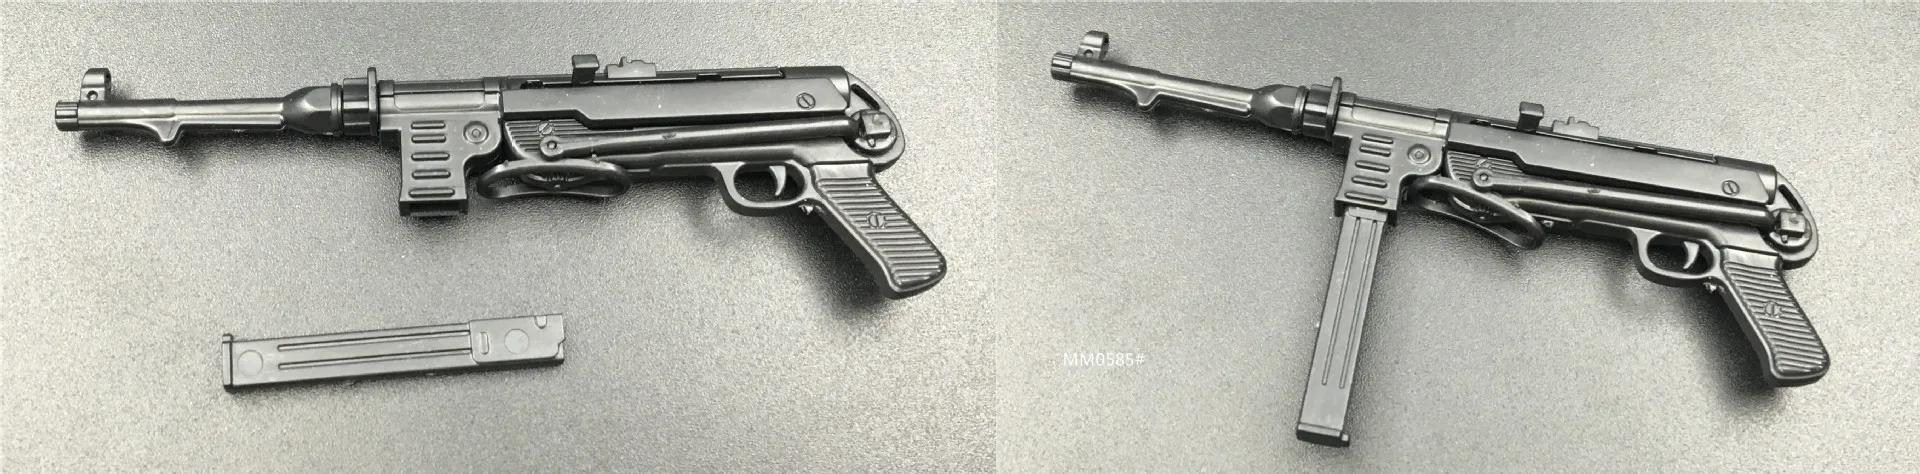 1:6 пистолет третьего поколения модель MP5 MP40 UZI 4D модель головоломка DIY статическая военная модель пластик собранная модель оружия игрушки